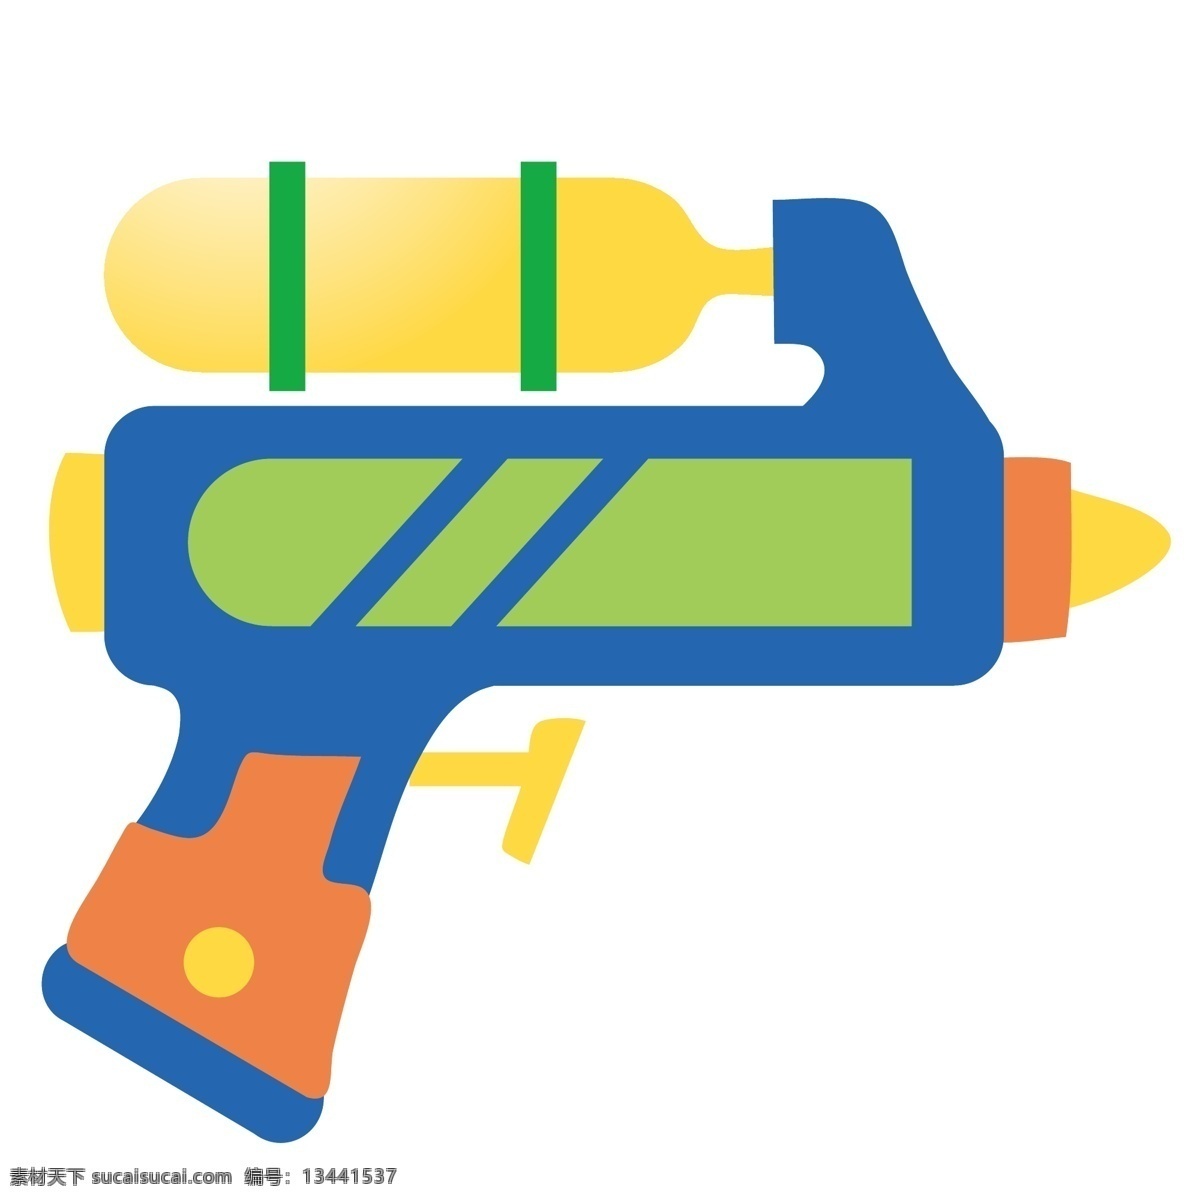 水枪 玩具 卡通 插画 卡通插画 水枪插画 玩具插画 水枪玩具 水枪模型 蓝色的水枪 好看的水枪